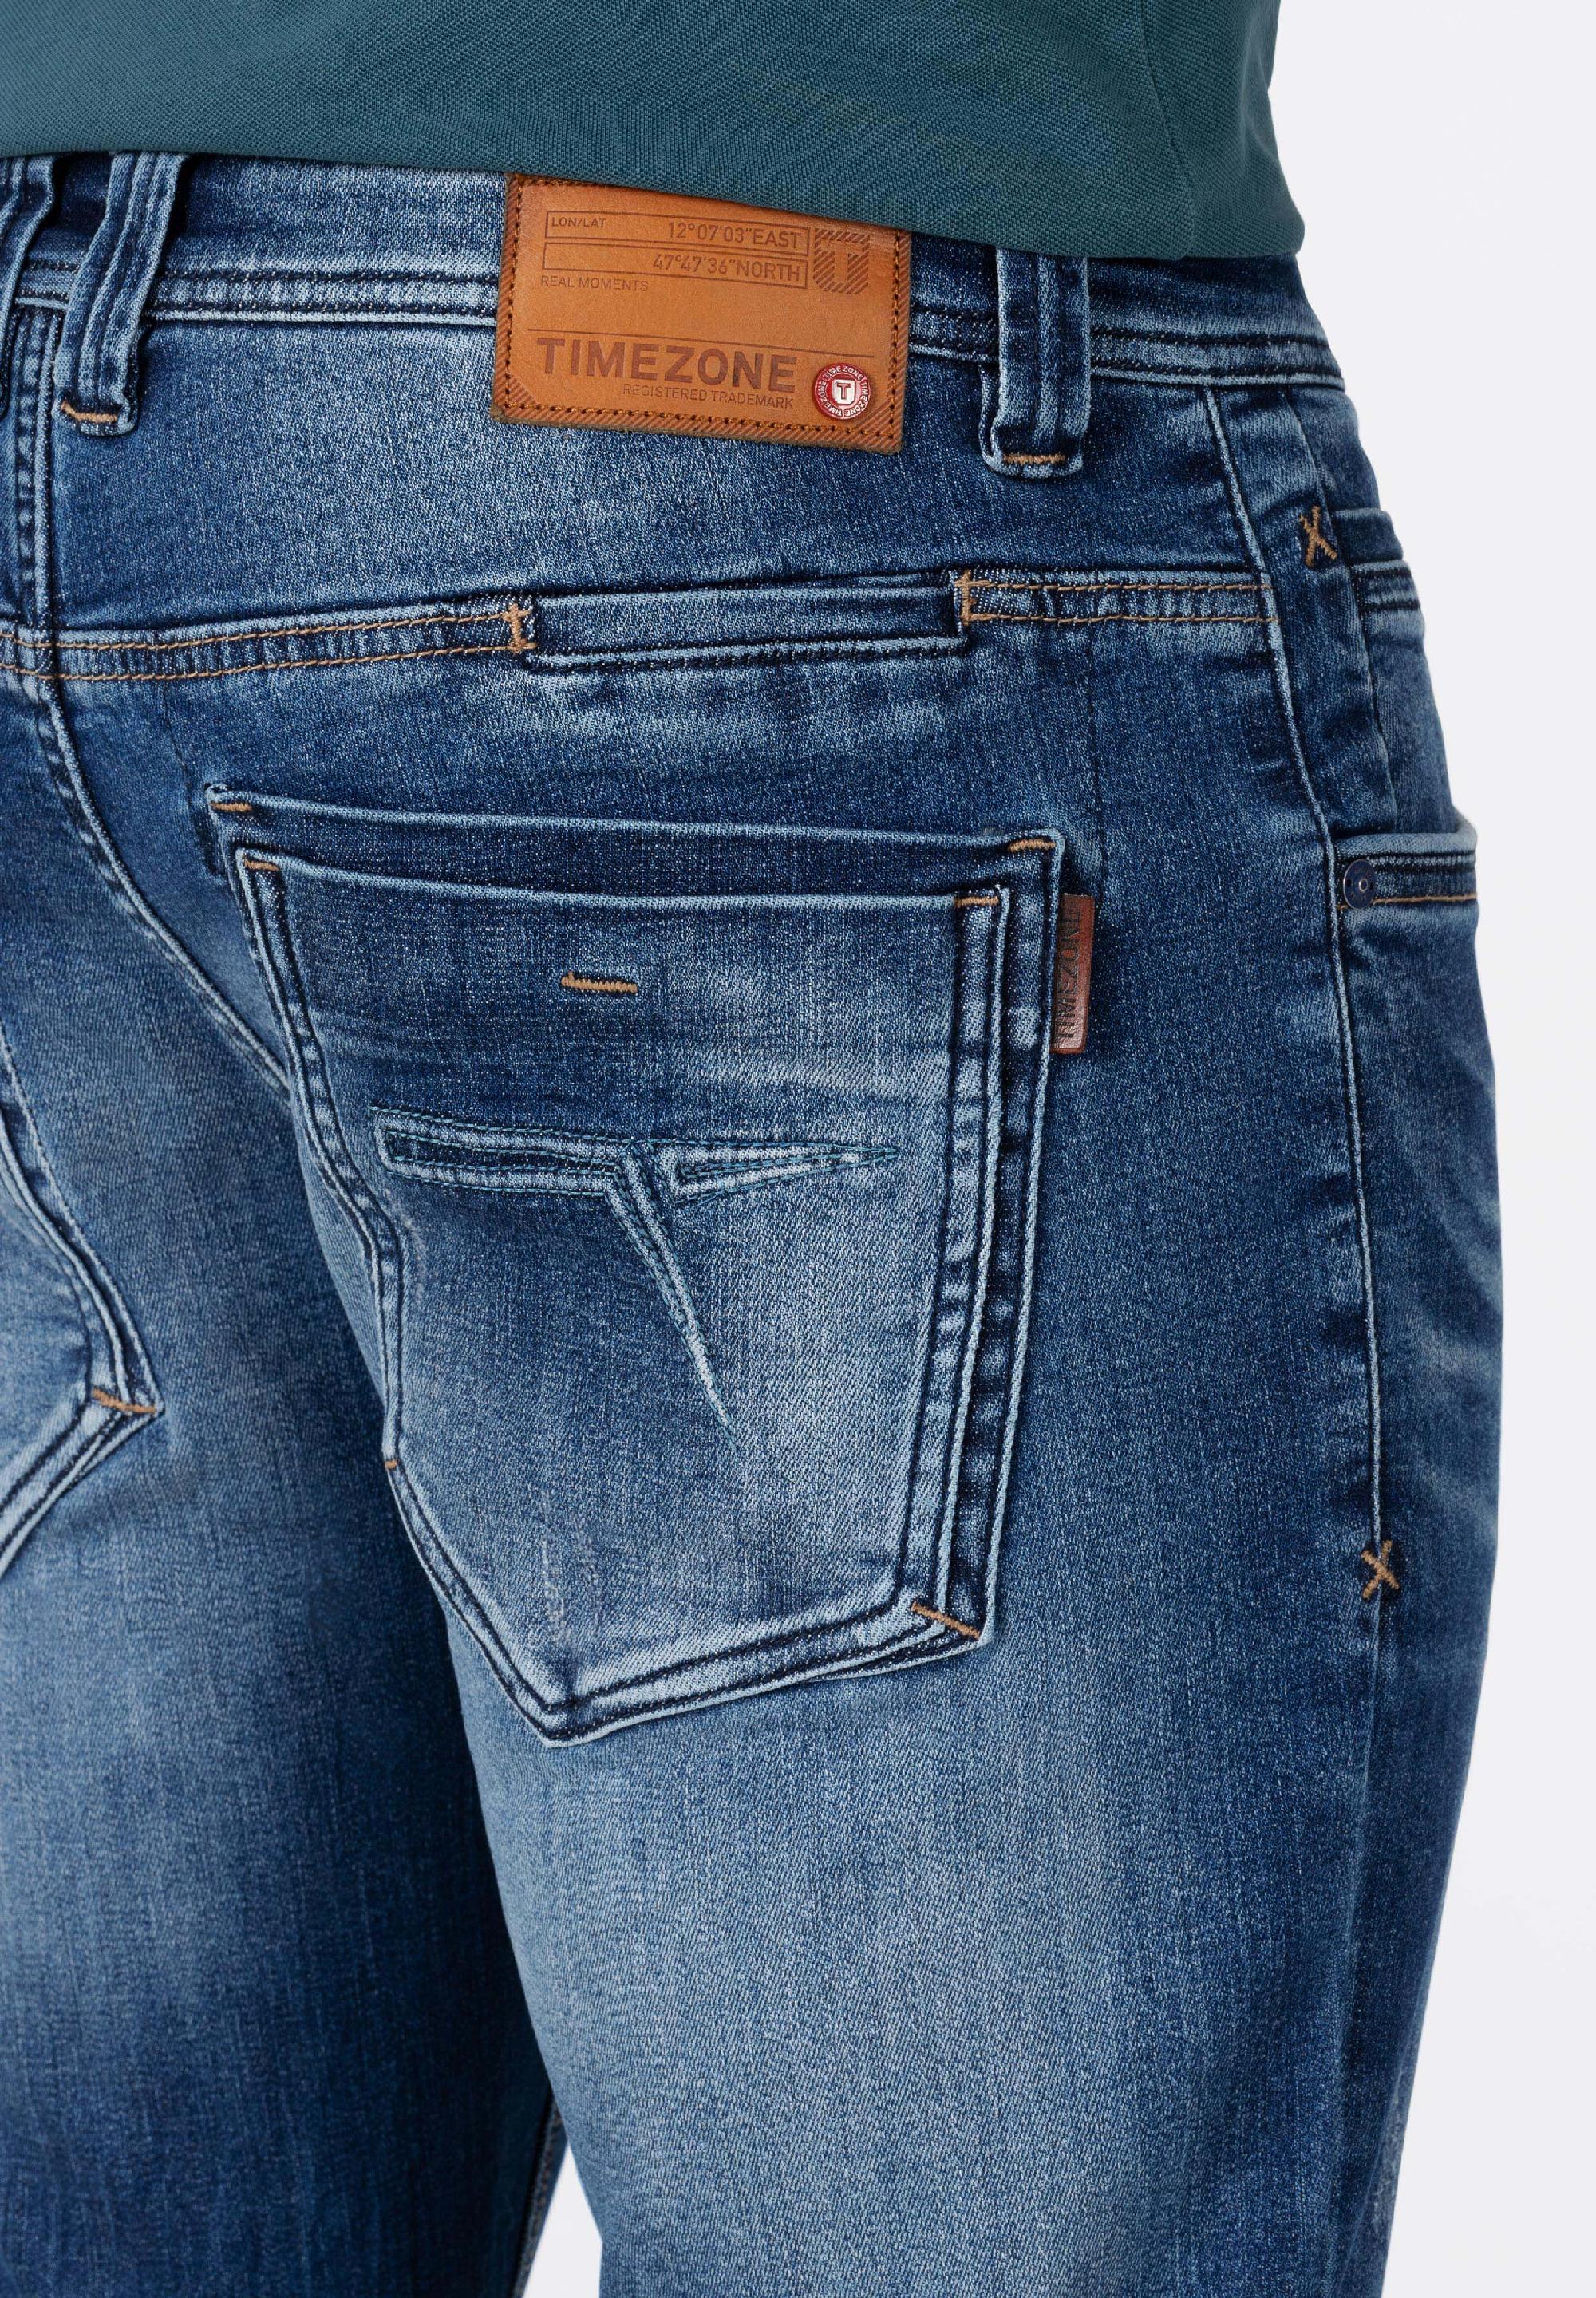 Timezone herren jeans - Die hochwertigsten Timezone herren jeans unter die Lupe genommen